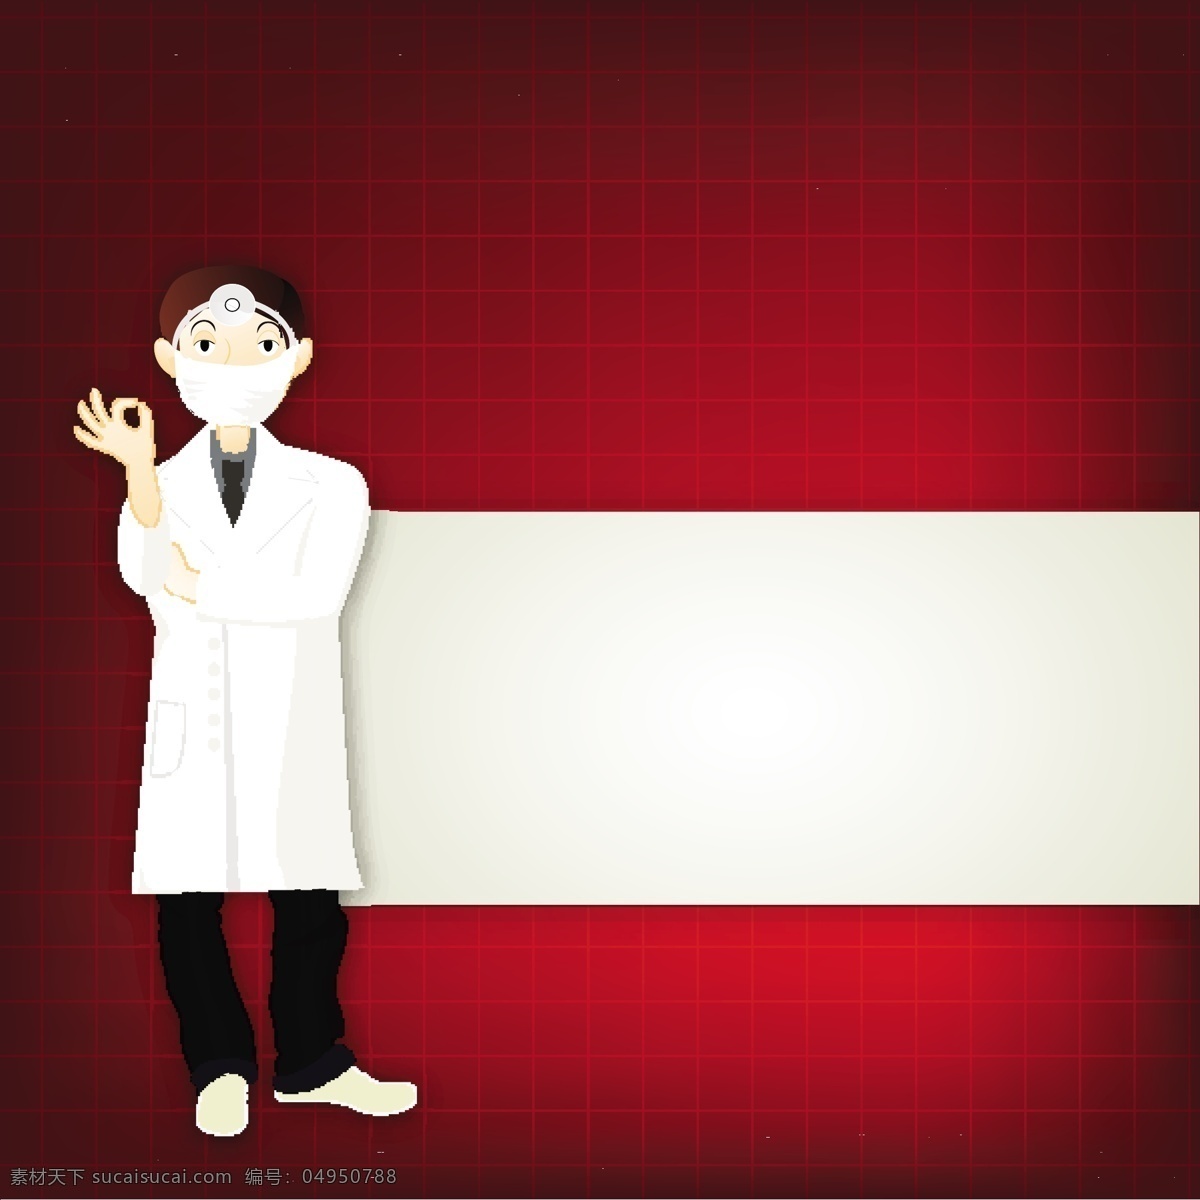 戴 口罩 的卡 通 医生 模板下载 医疗主题 医疗 医疗器材 卡通人物 医疗保健 行业标志 标志图标 矢量素材 红色